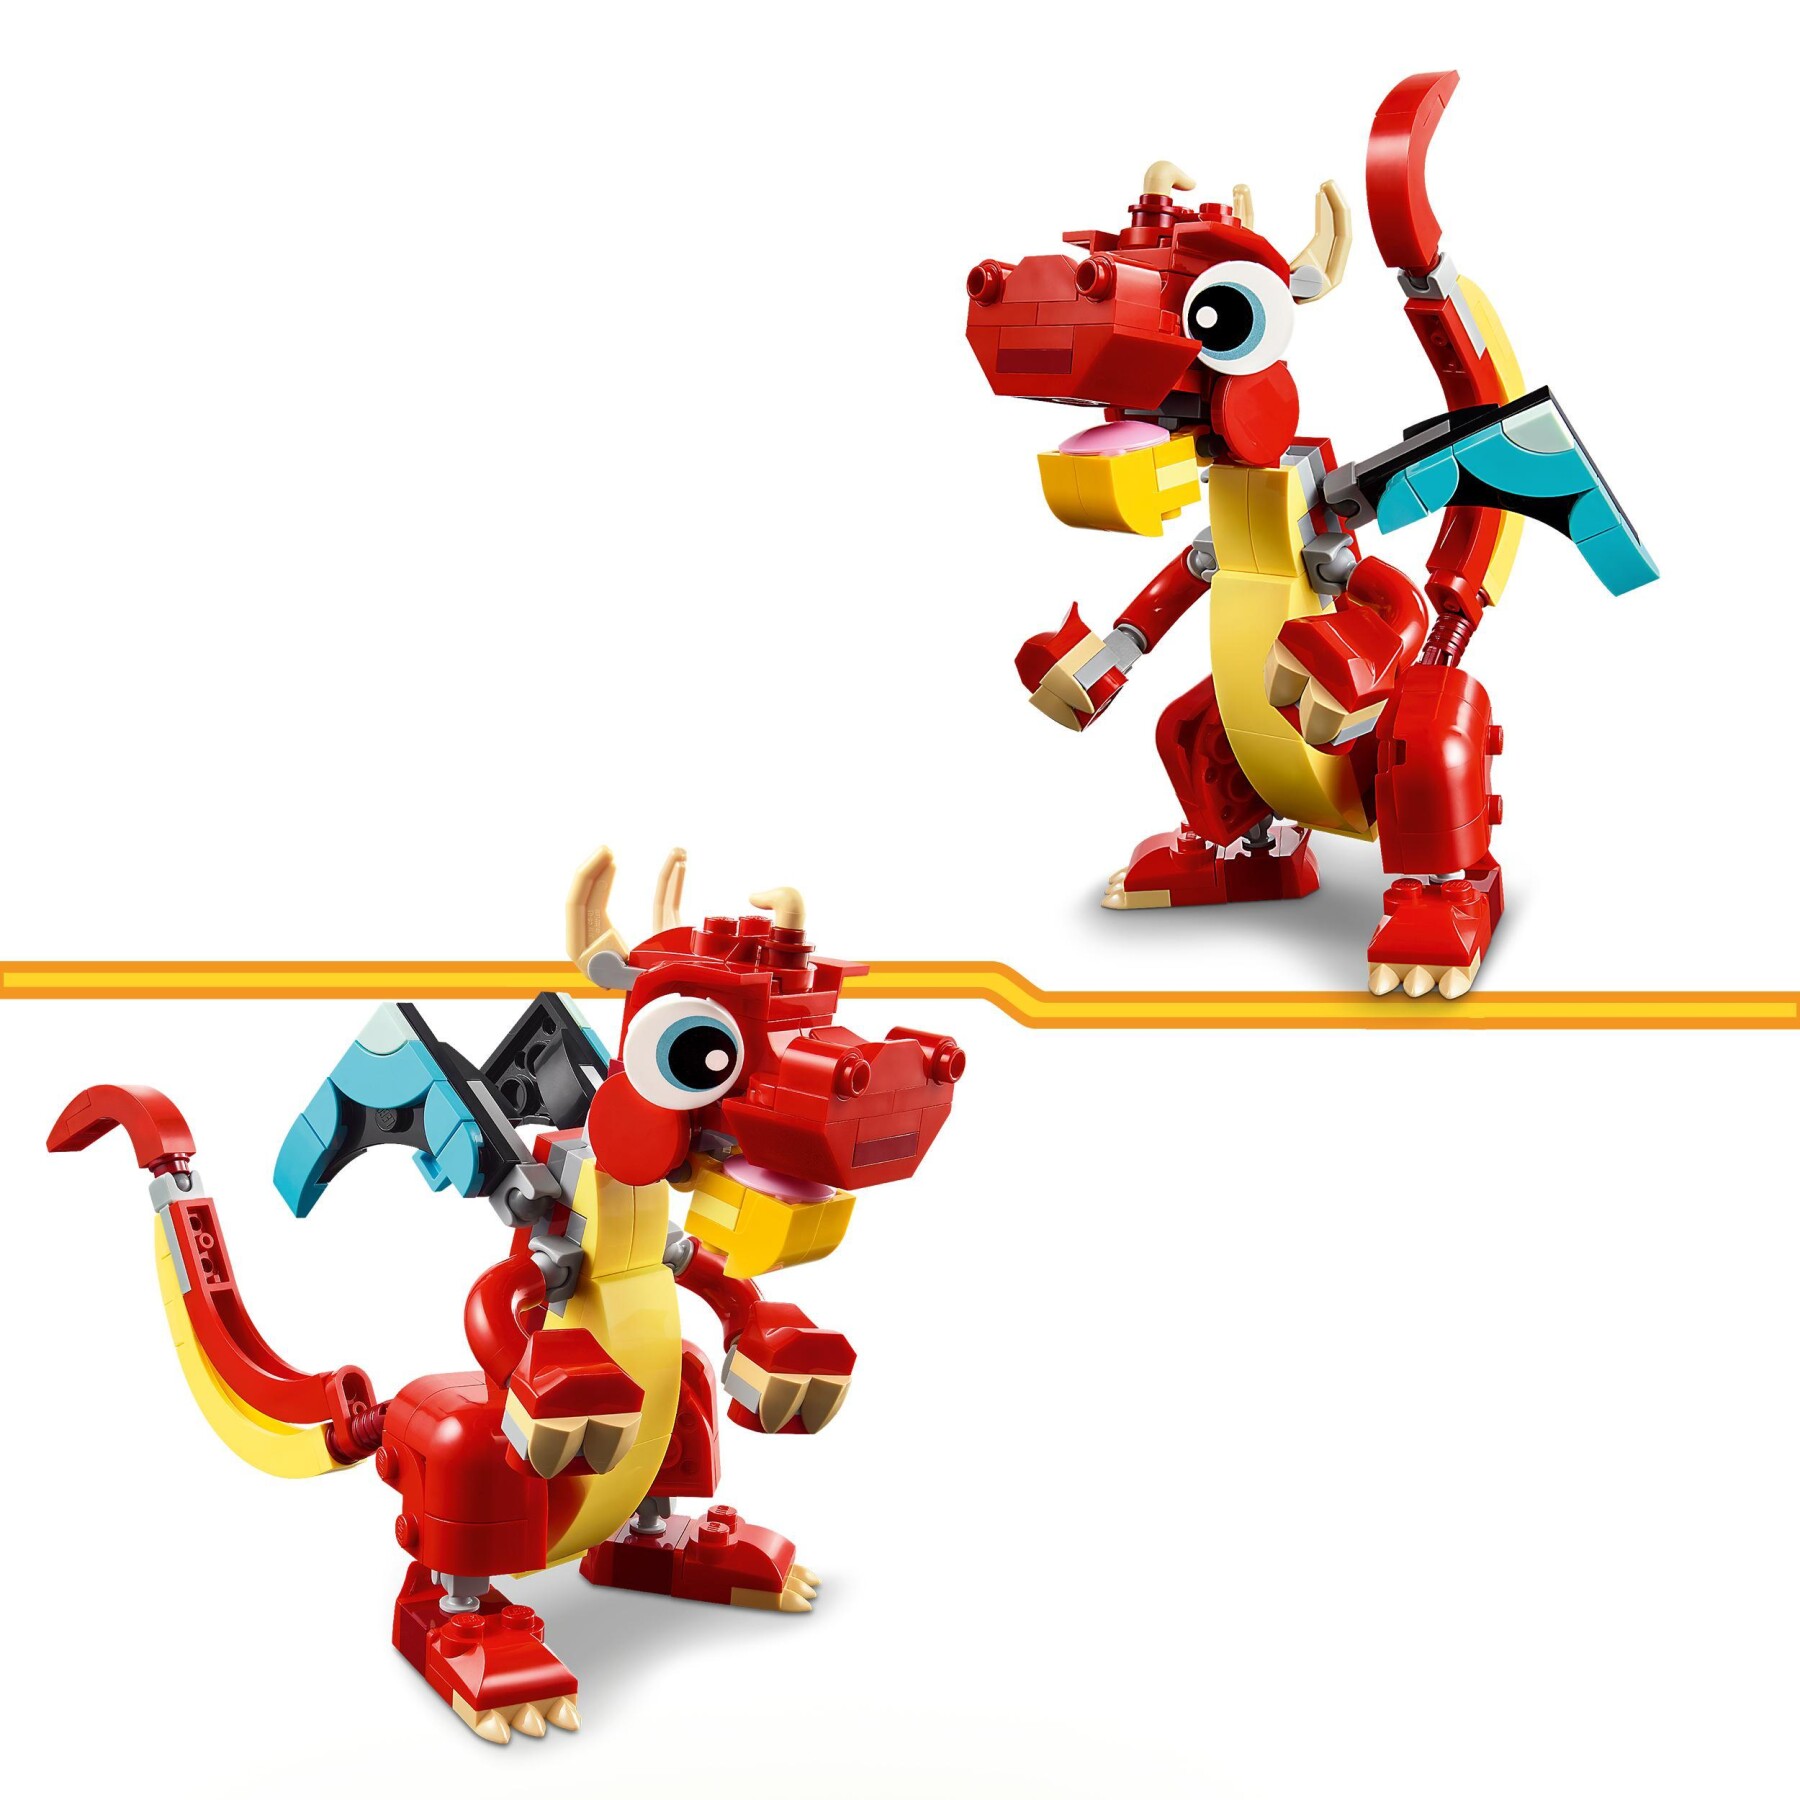 Lego creator 31145 3in1 drago rosso, giochi per bambini di 6+ anni, action figure ricostruibile in pesce e fenice giocattolo - LEGO CREATOR